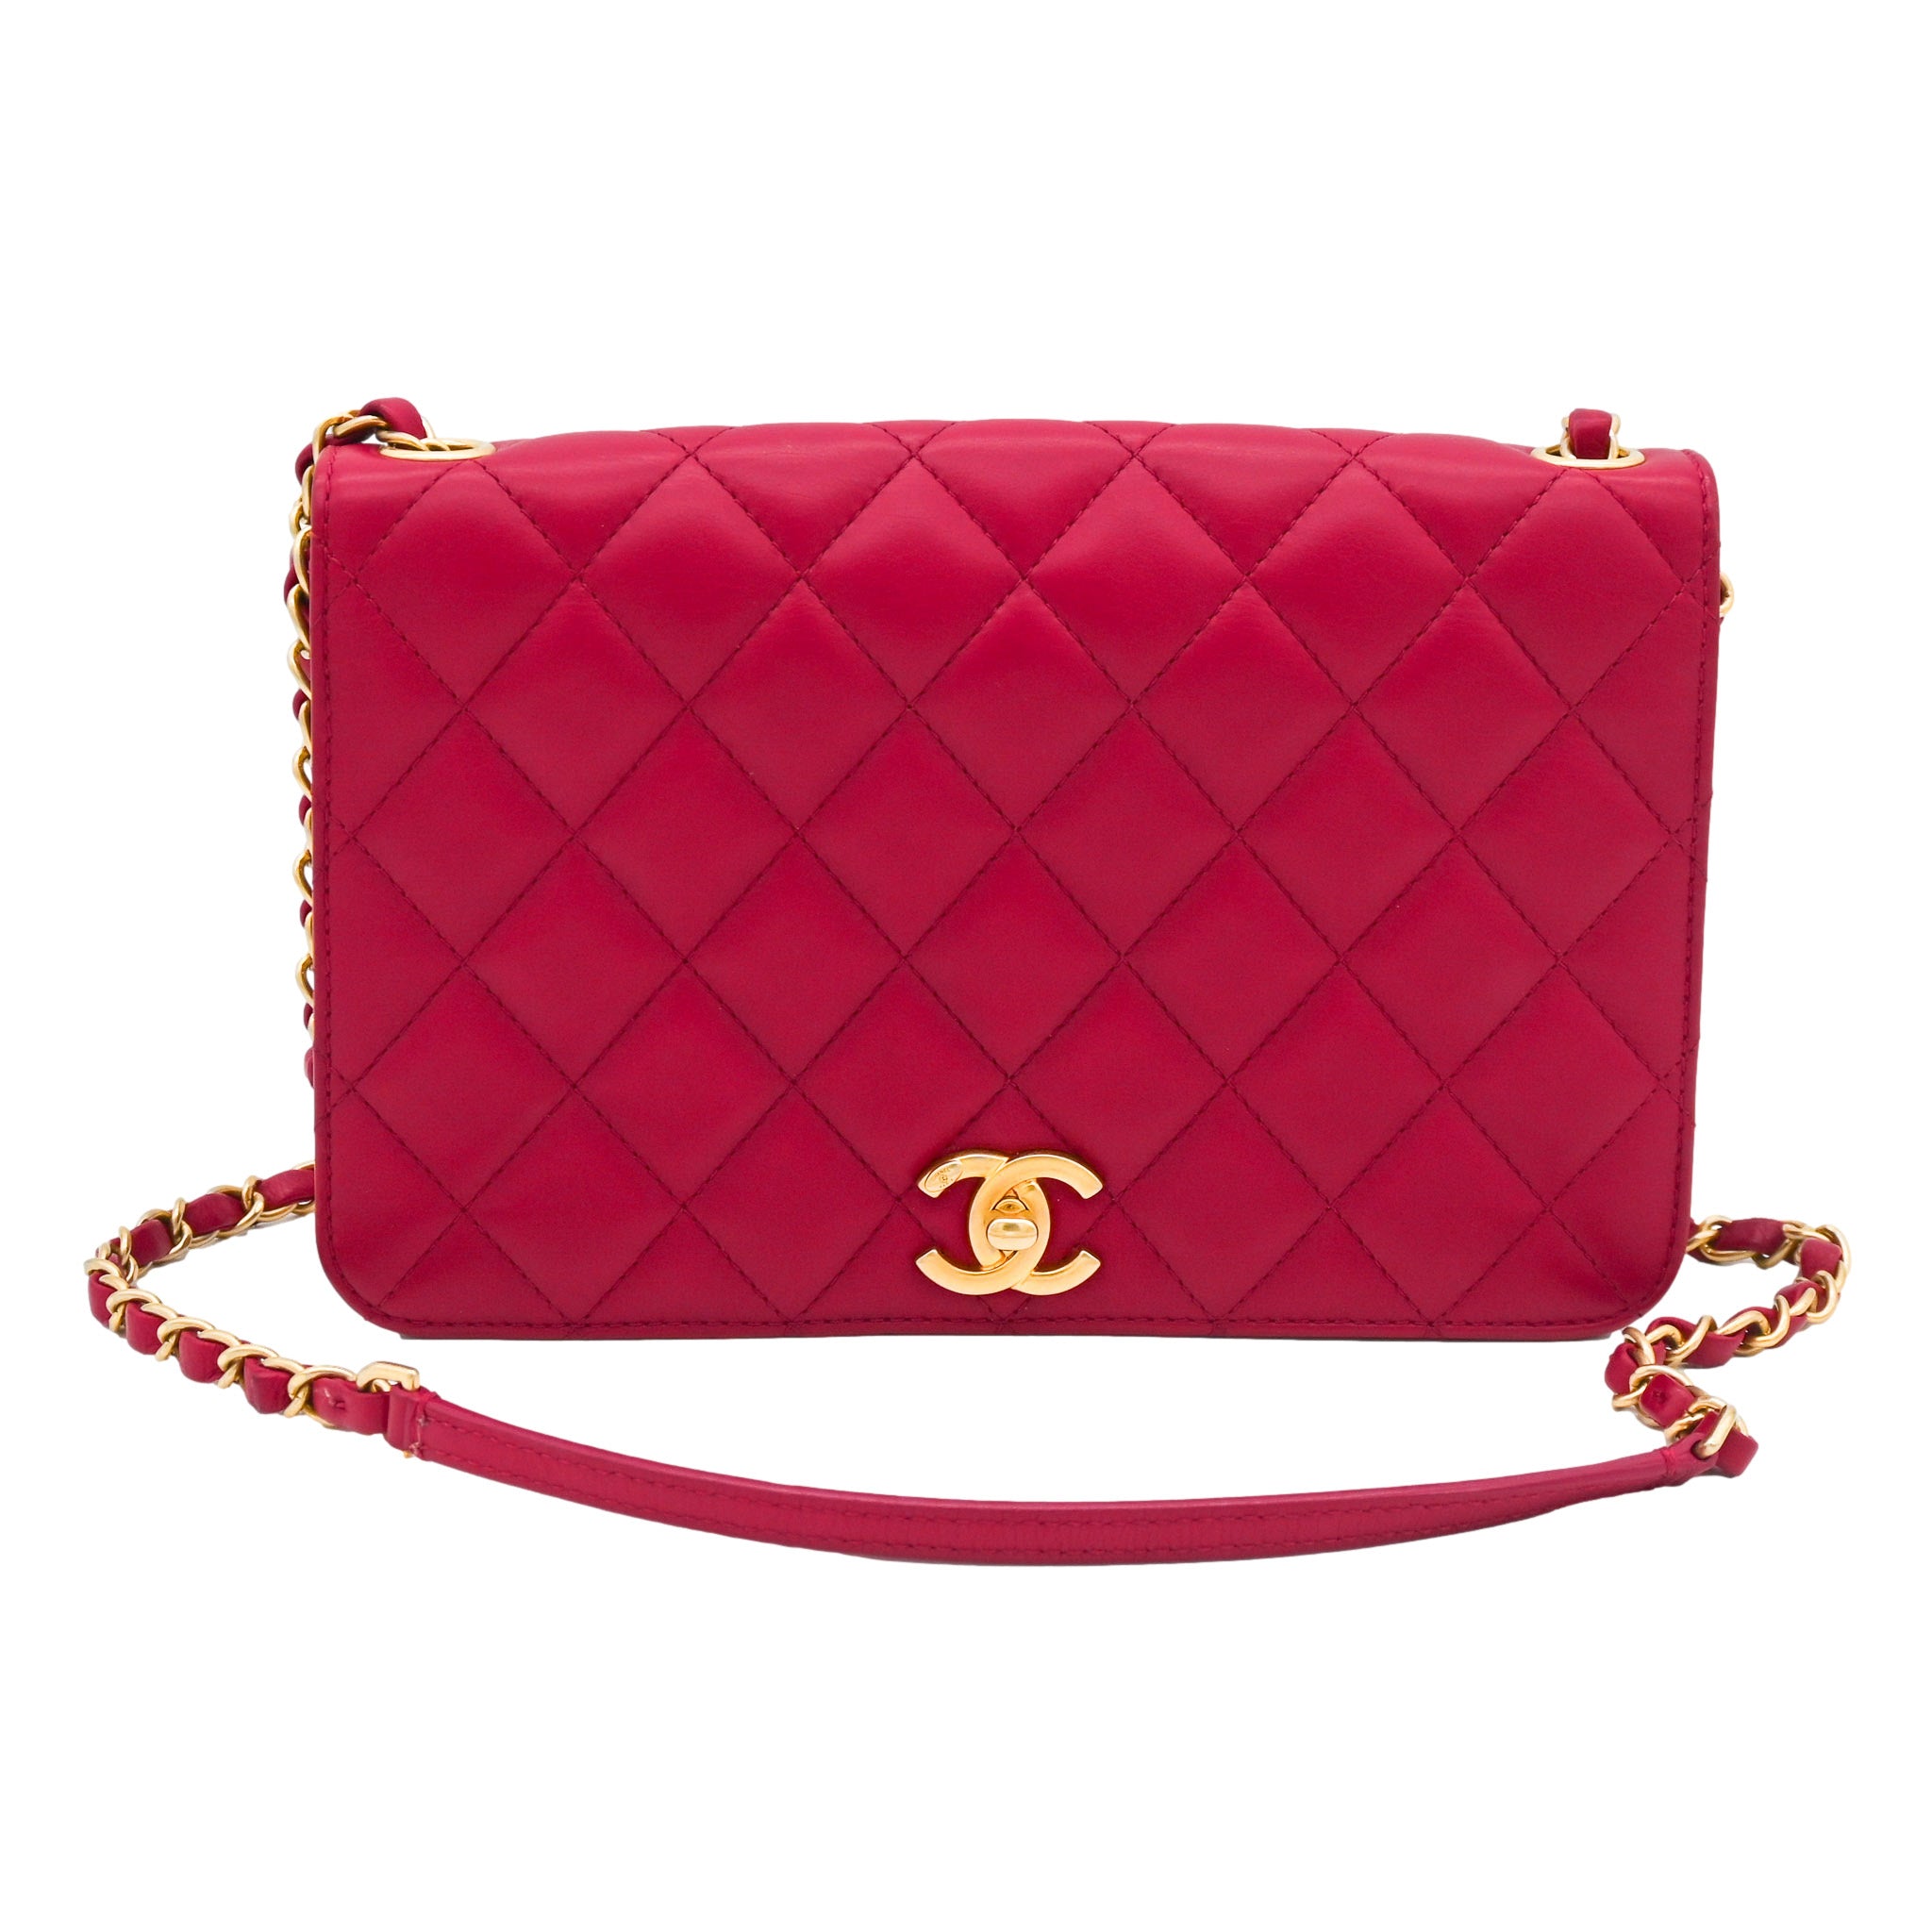 CHANEL Chanel Matelasse Red Lambskin Shoulder Bag - Vault 55